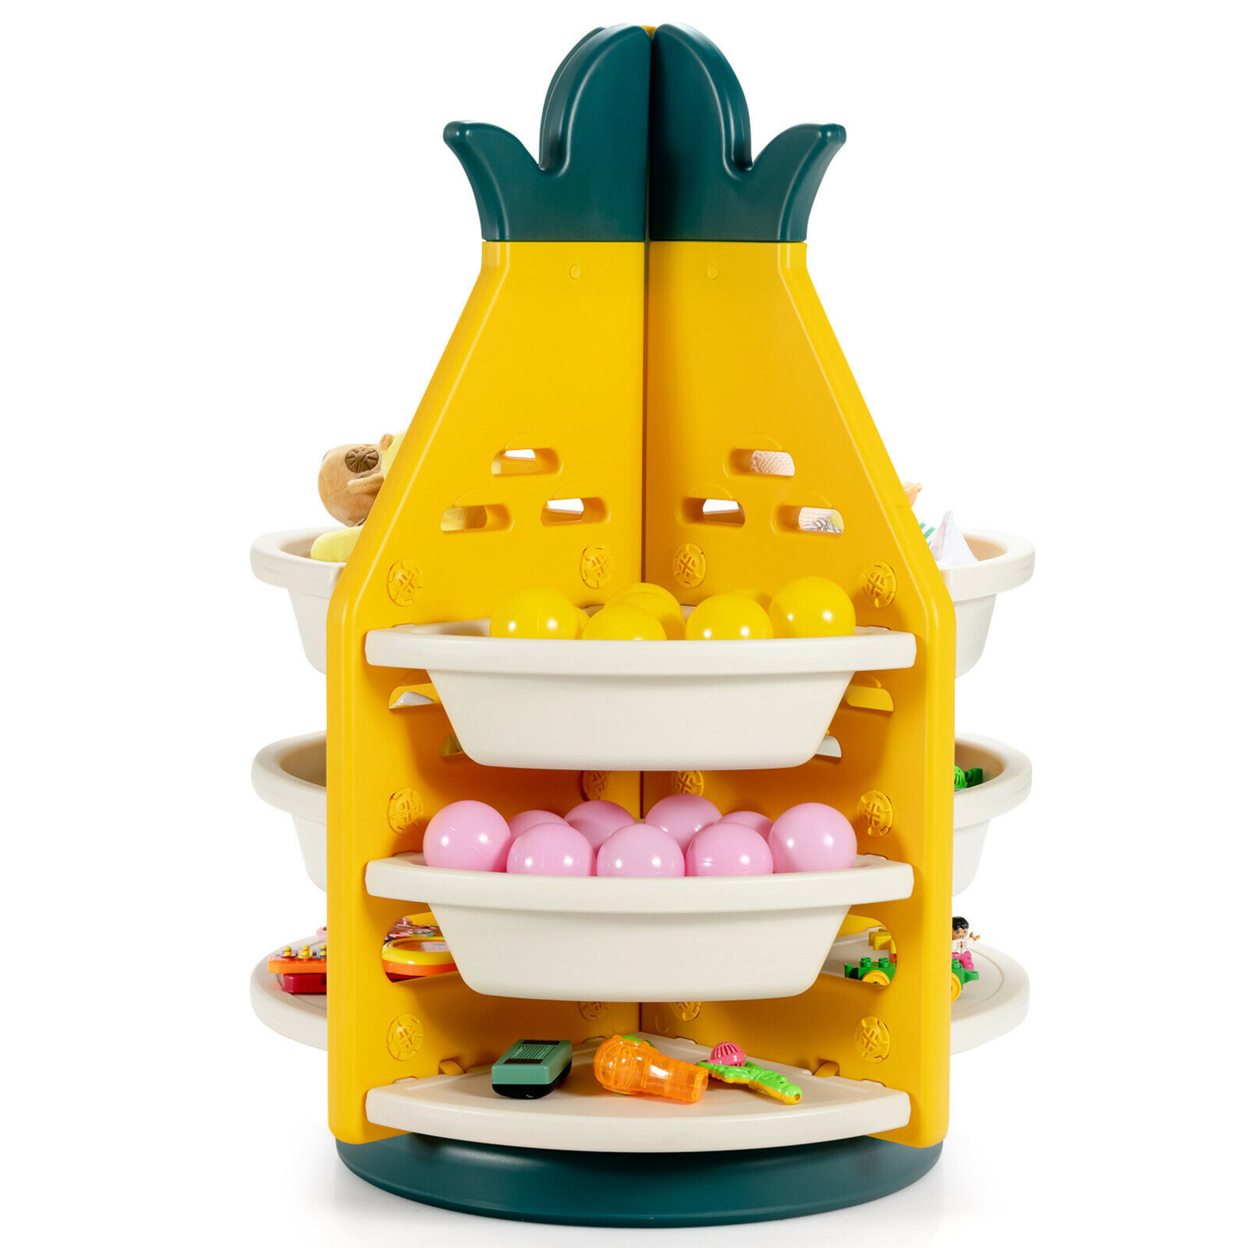 Kids Toy Storage Organizer 360Â° Revolving Pineapple Shelf W/Plastic Bins